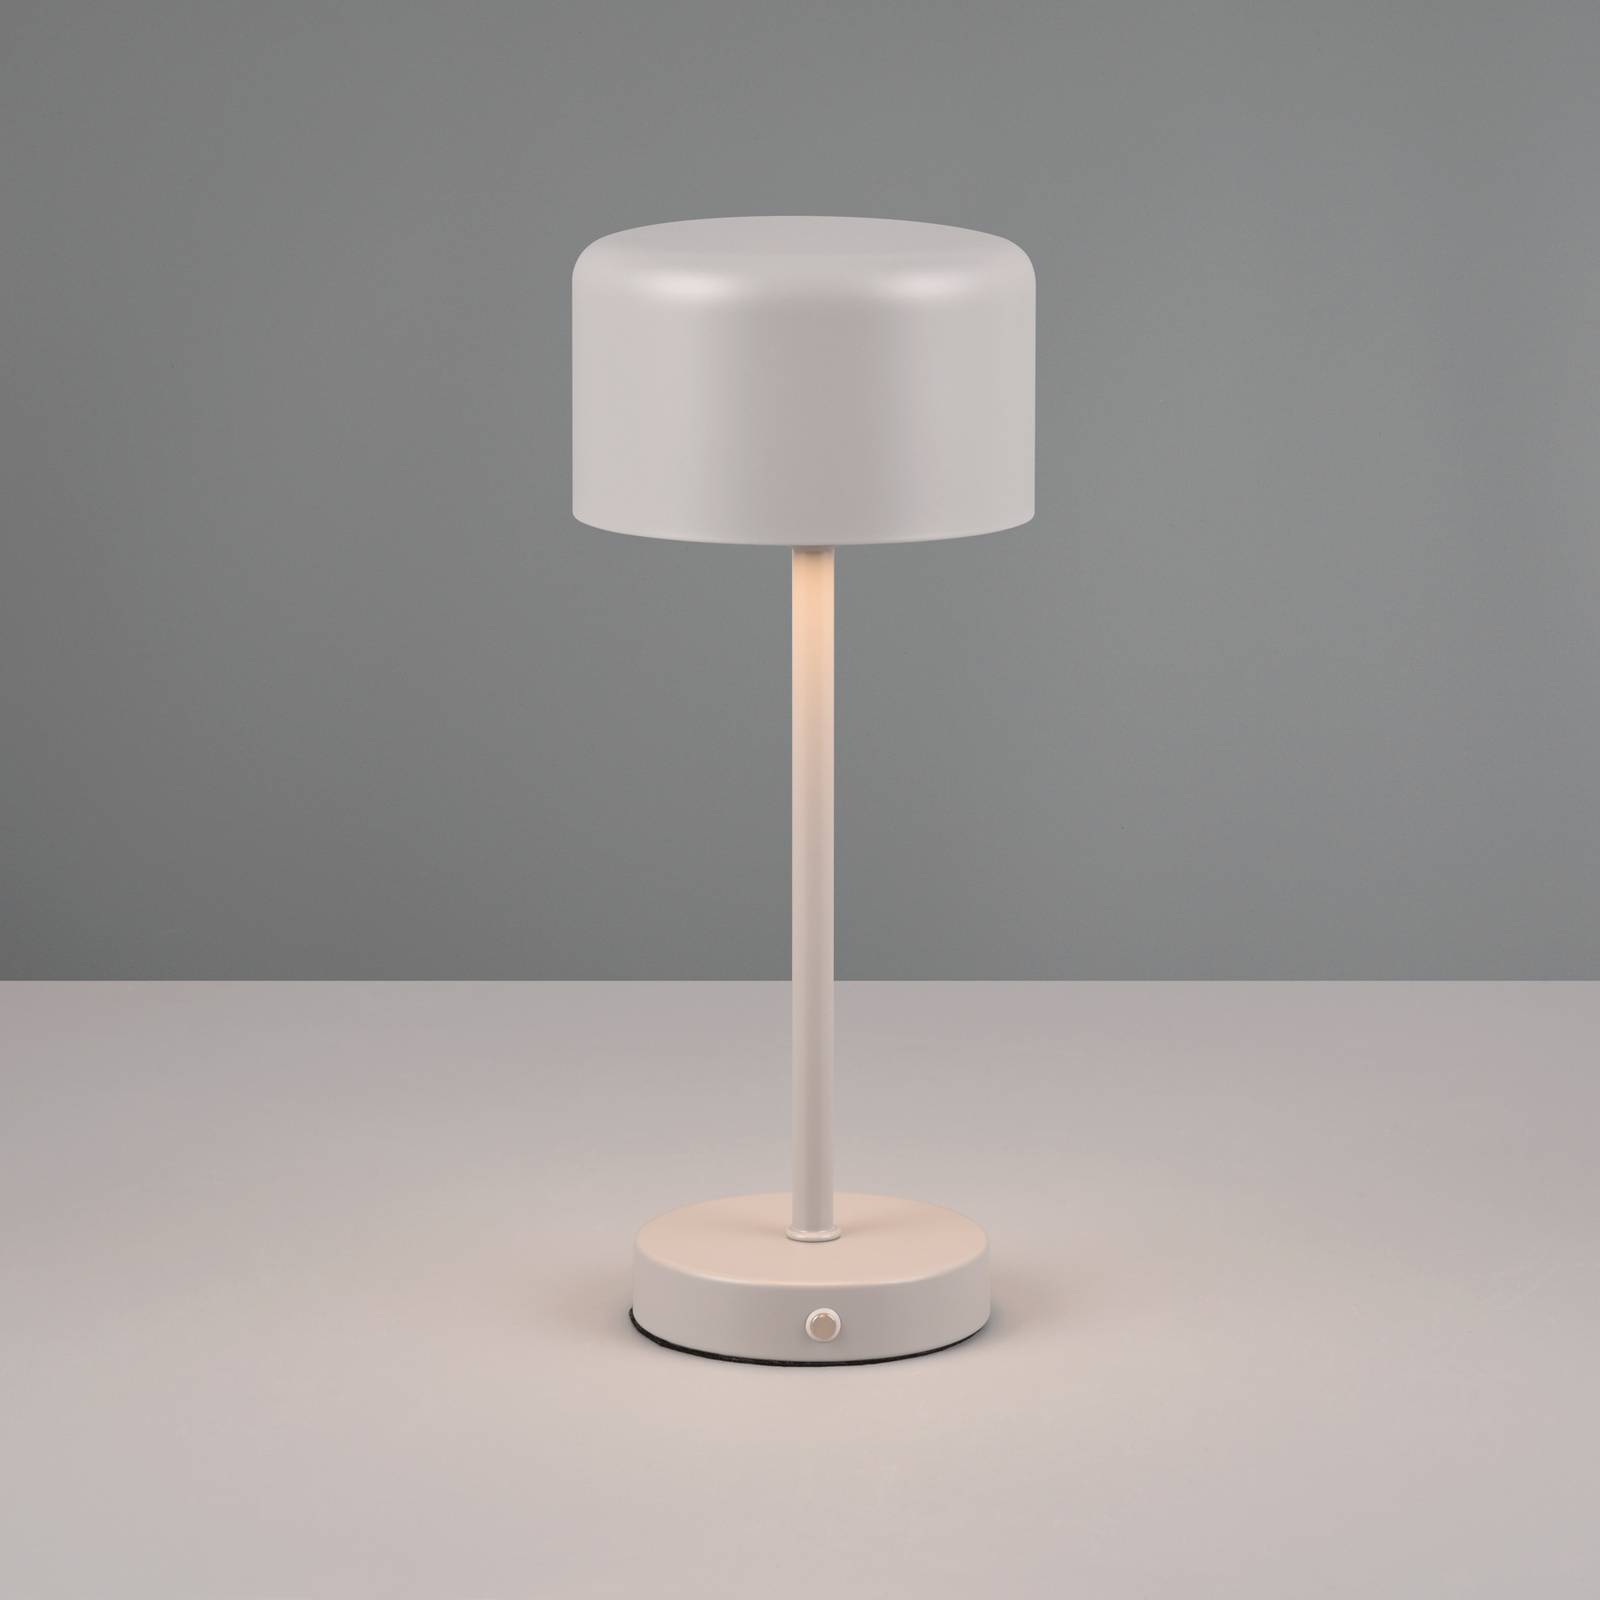 Jeff LED oppladbar bordlampe grå høyde 30 cm metall